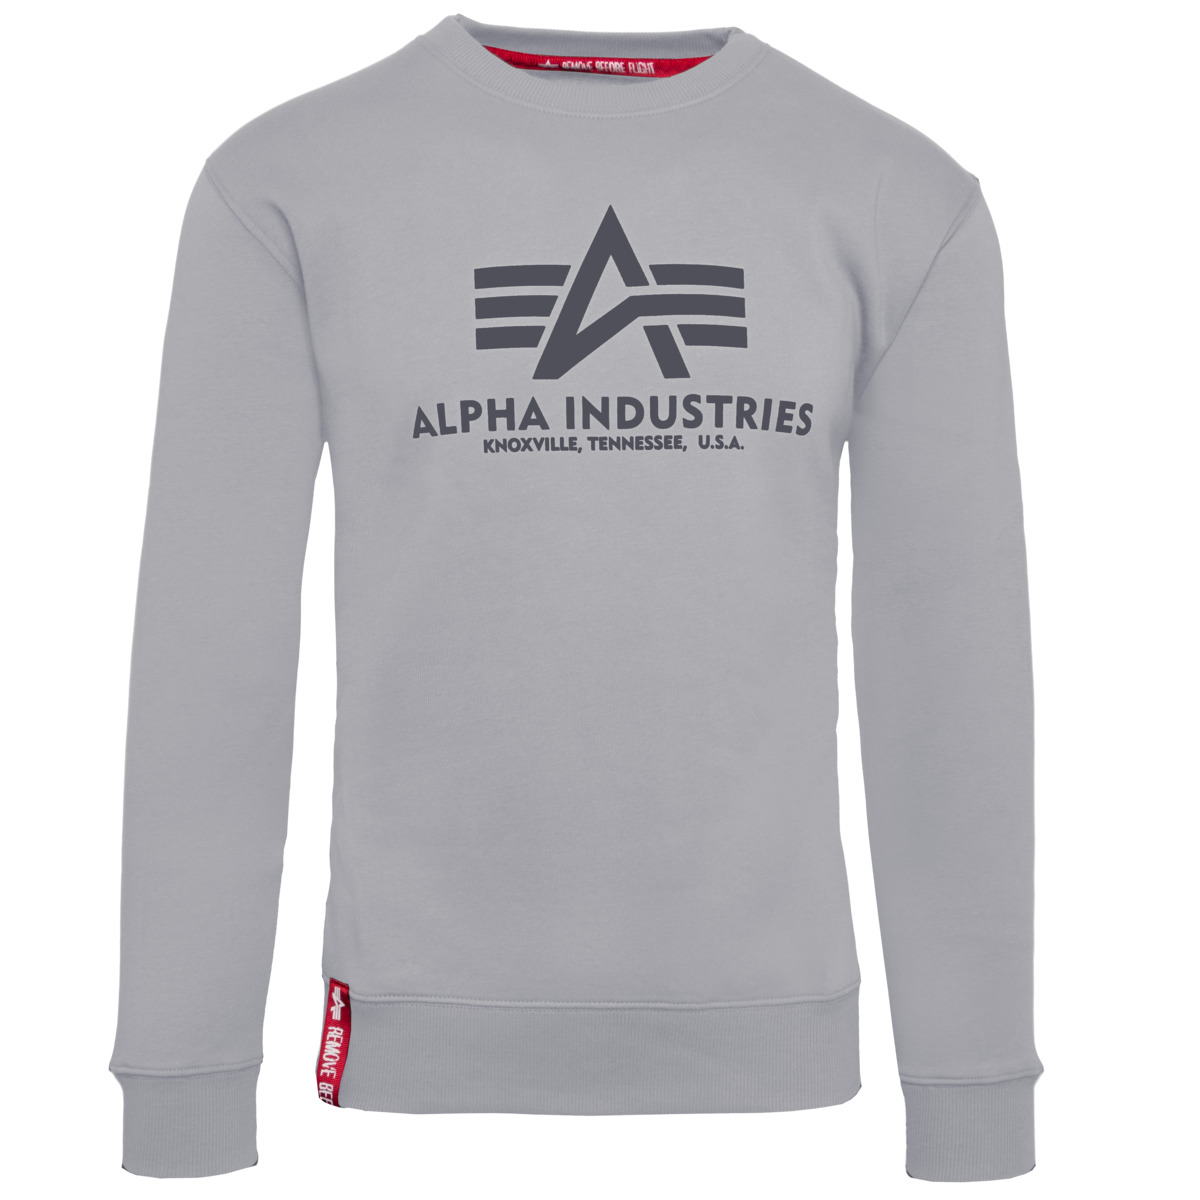 Alpha Industries Kultmarke jetzt günstig kaufen - TAURO